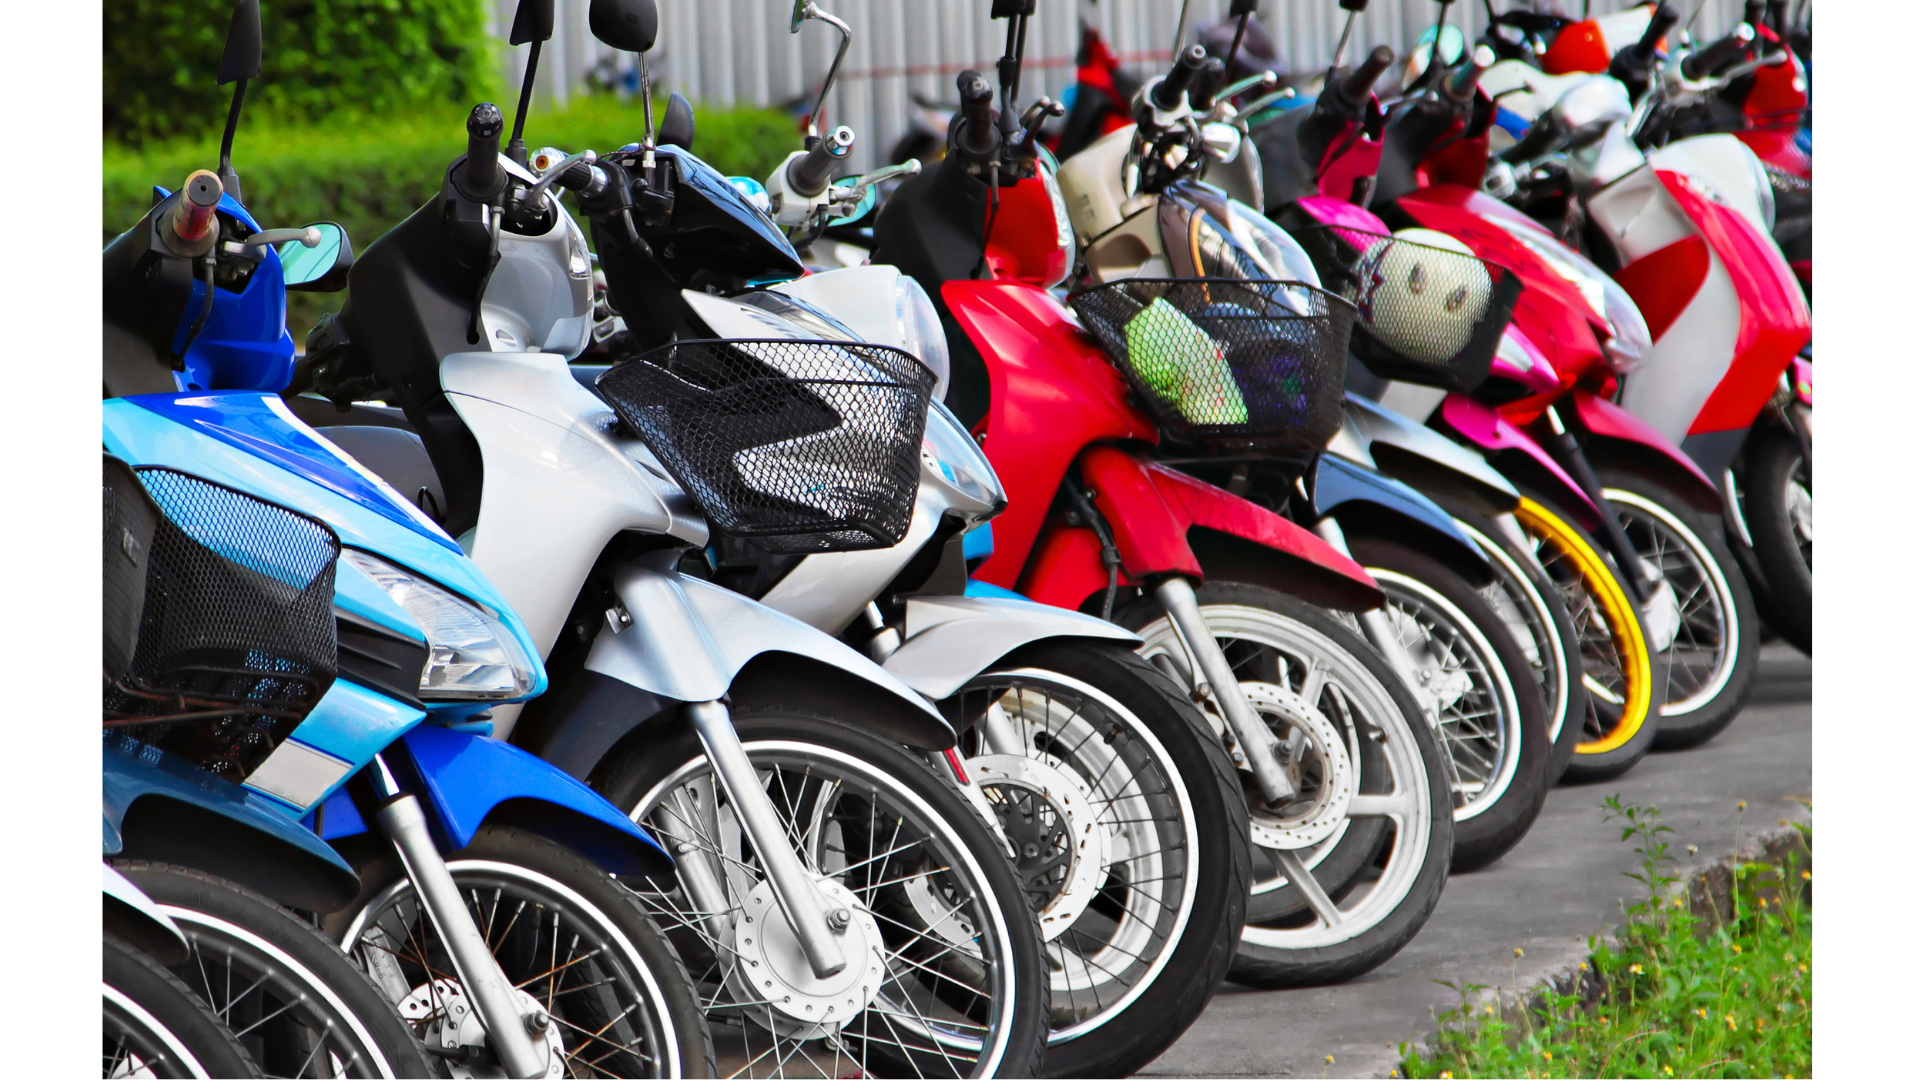 ส.อ.ท.คาดปี 2566 ท่องเที่ยวฟื้นตัวหนุนไทยผลิตรถจักรยานยนต์ถึง 2.1 ล้านคัน